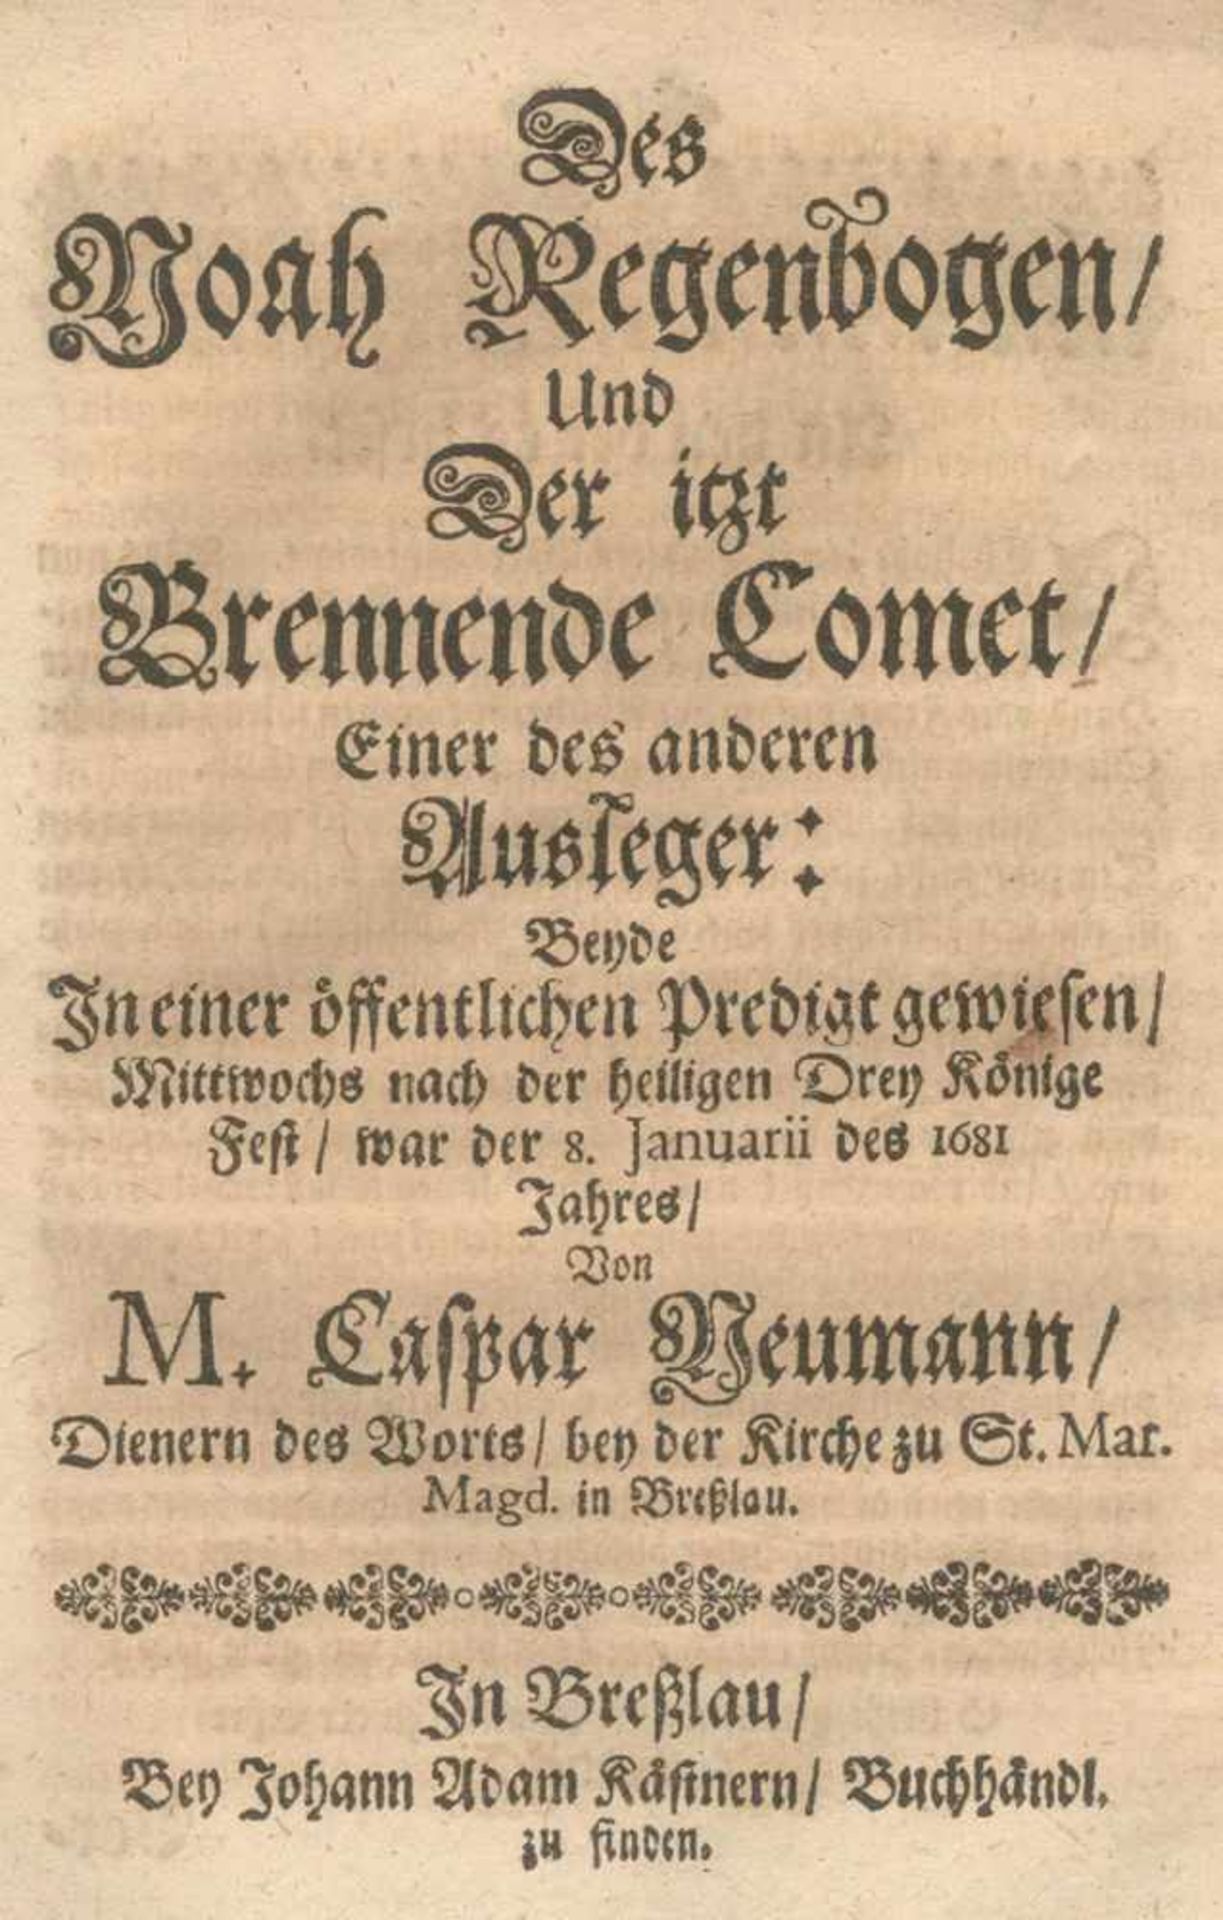 Neumann,C.Des Noah Regenbogen, Und Der itzt Brennende Comet, Einer des anderen Ausleger: Beyde In